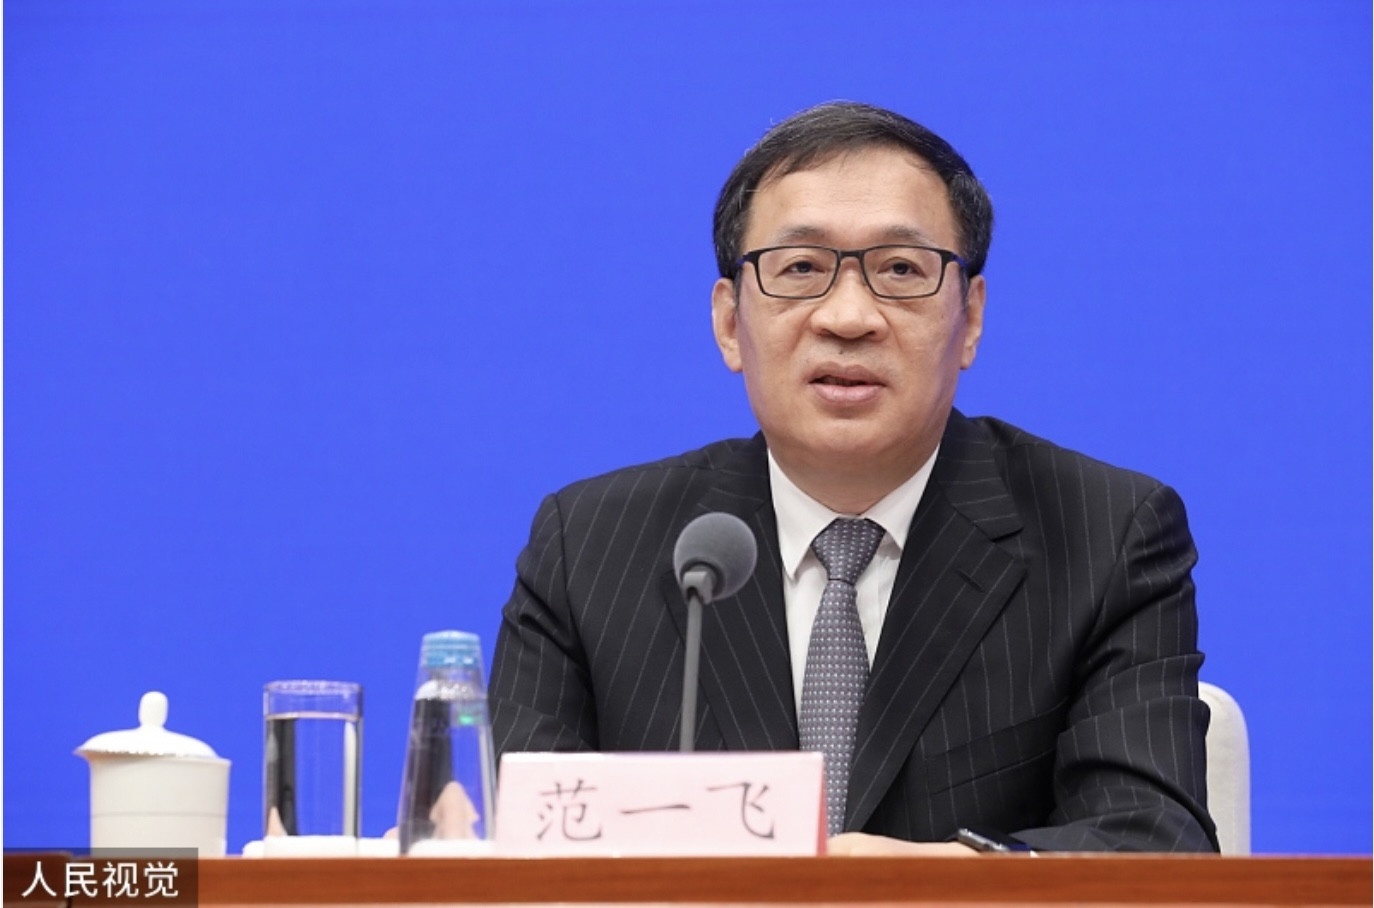 Phó Thống đốc ngân hàng Trung ương Trung Quốc bị điều tra